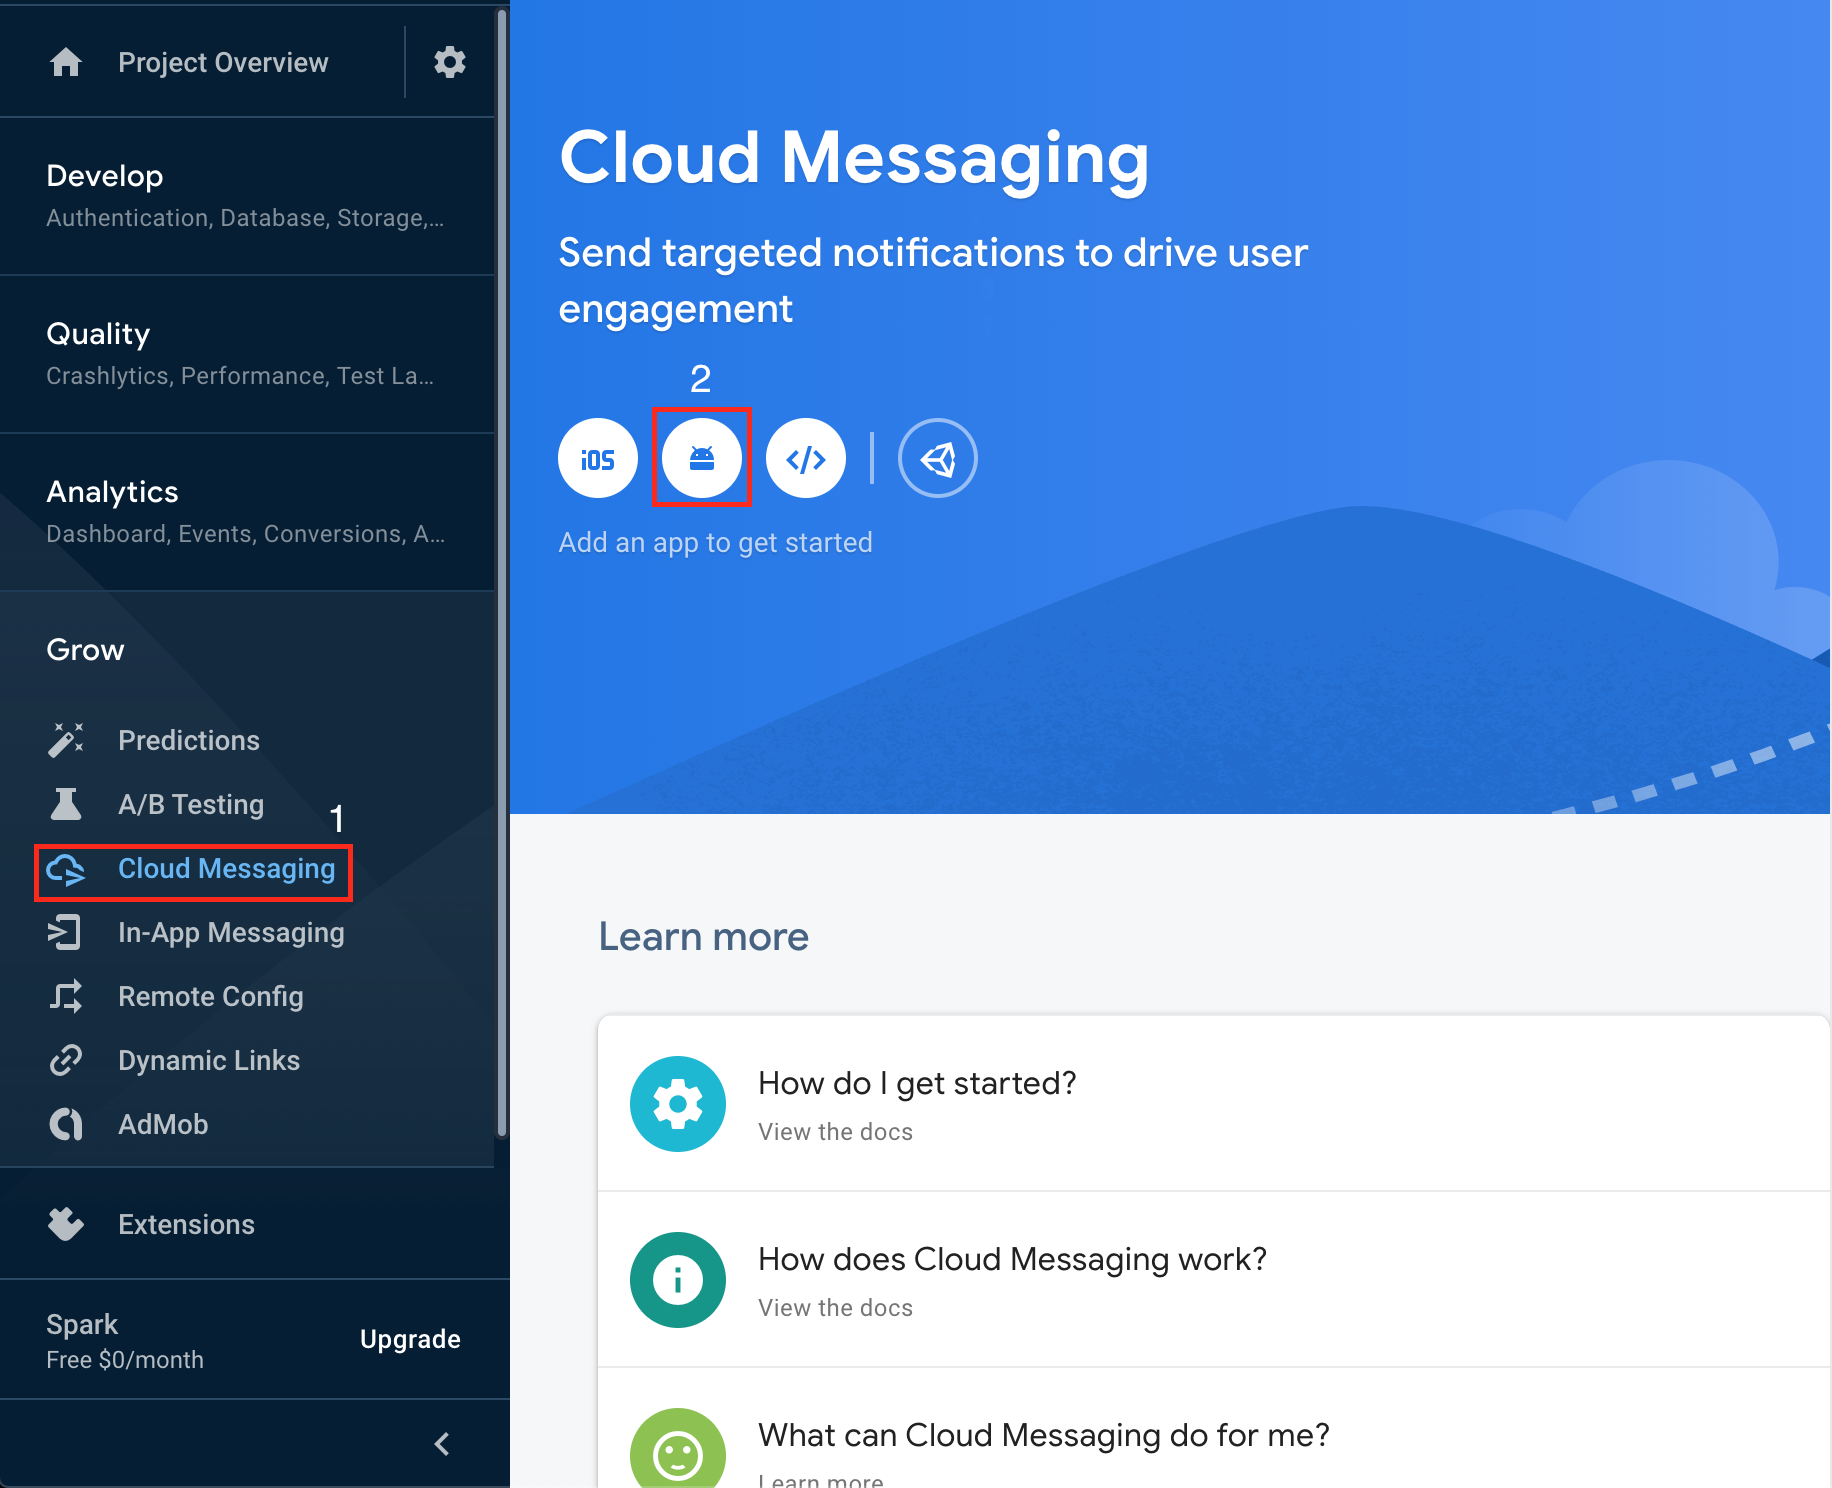 Cloud Messaging